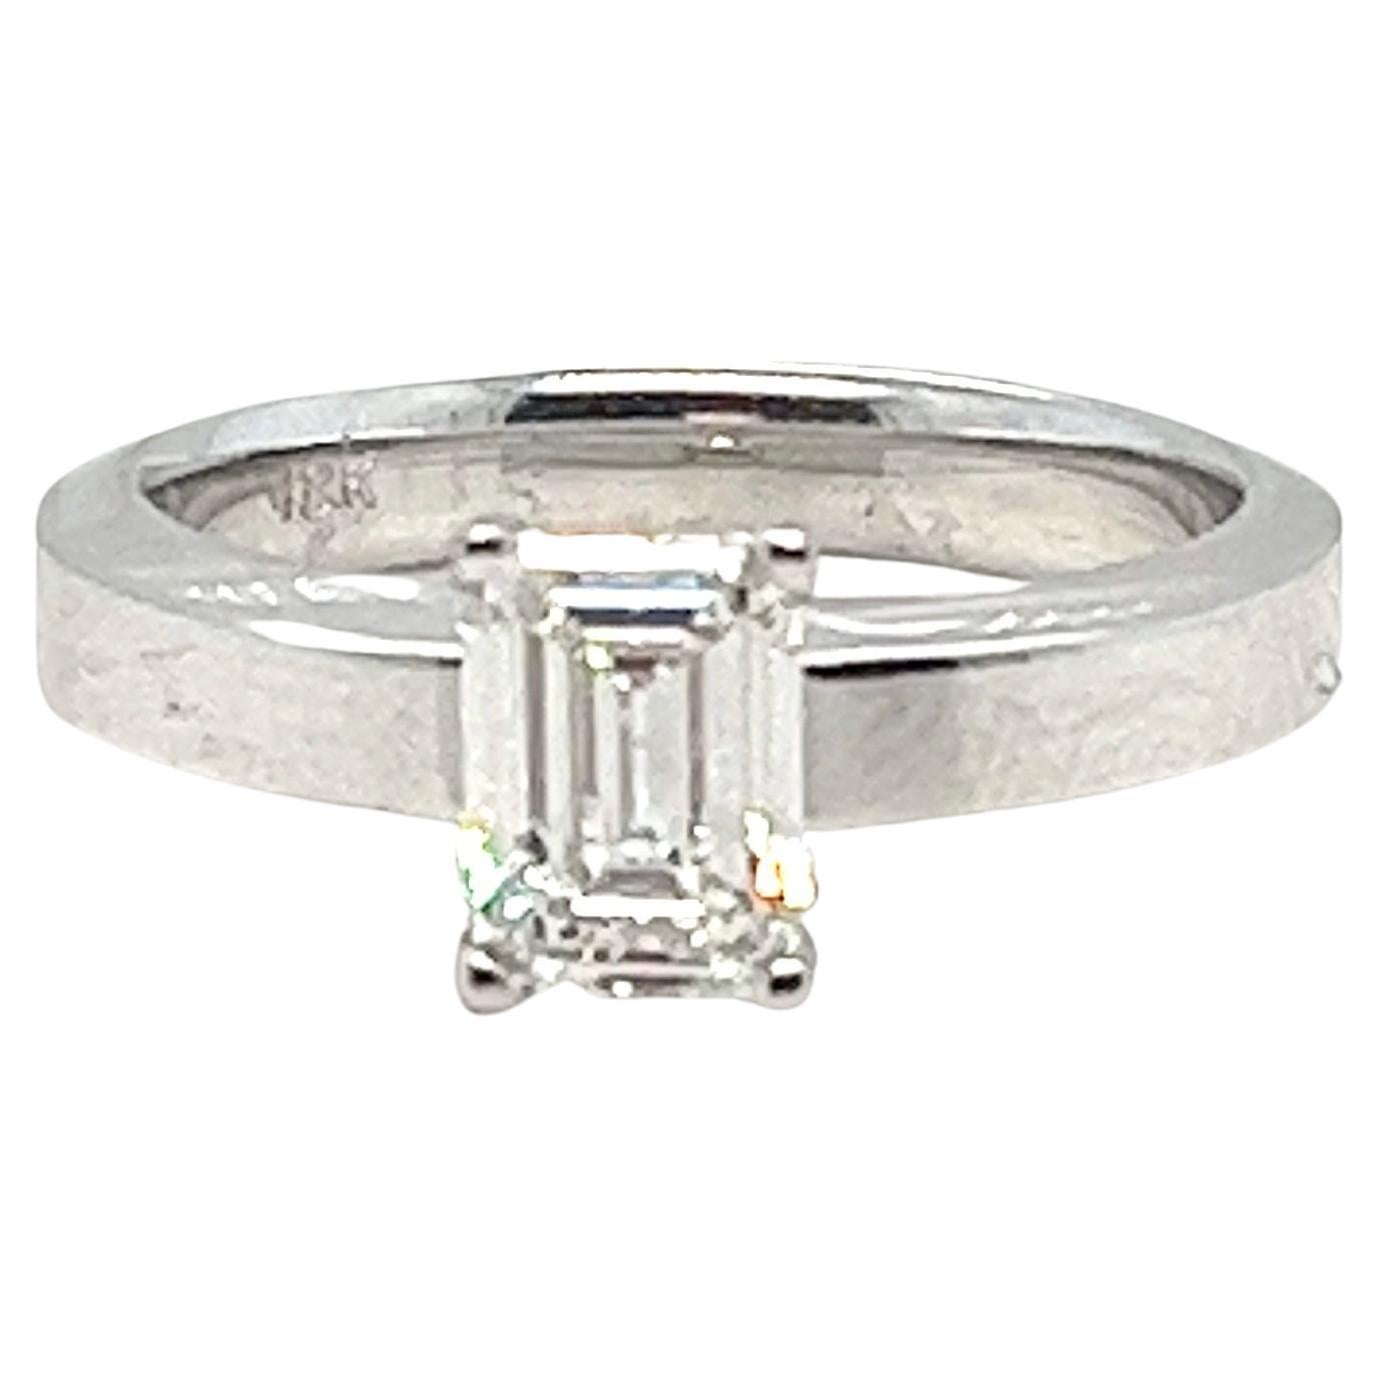 Exquisite 1,10 Karat Smaragdschliff Diamant Solitär Ring - GIA zertifiziert

Steigern Sie Ihr Engagement mit einem Diamanten, der die Essenz von dauerhafter Liebe und erlesener Eleganz widerspiegelt. Dieser GIA-zertifizierte Diamant im